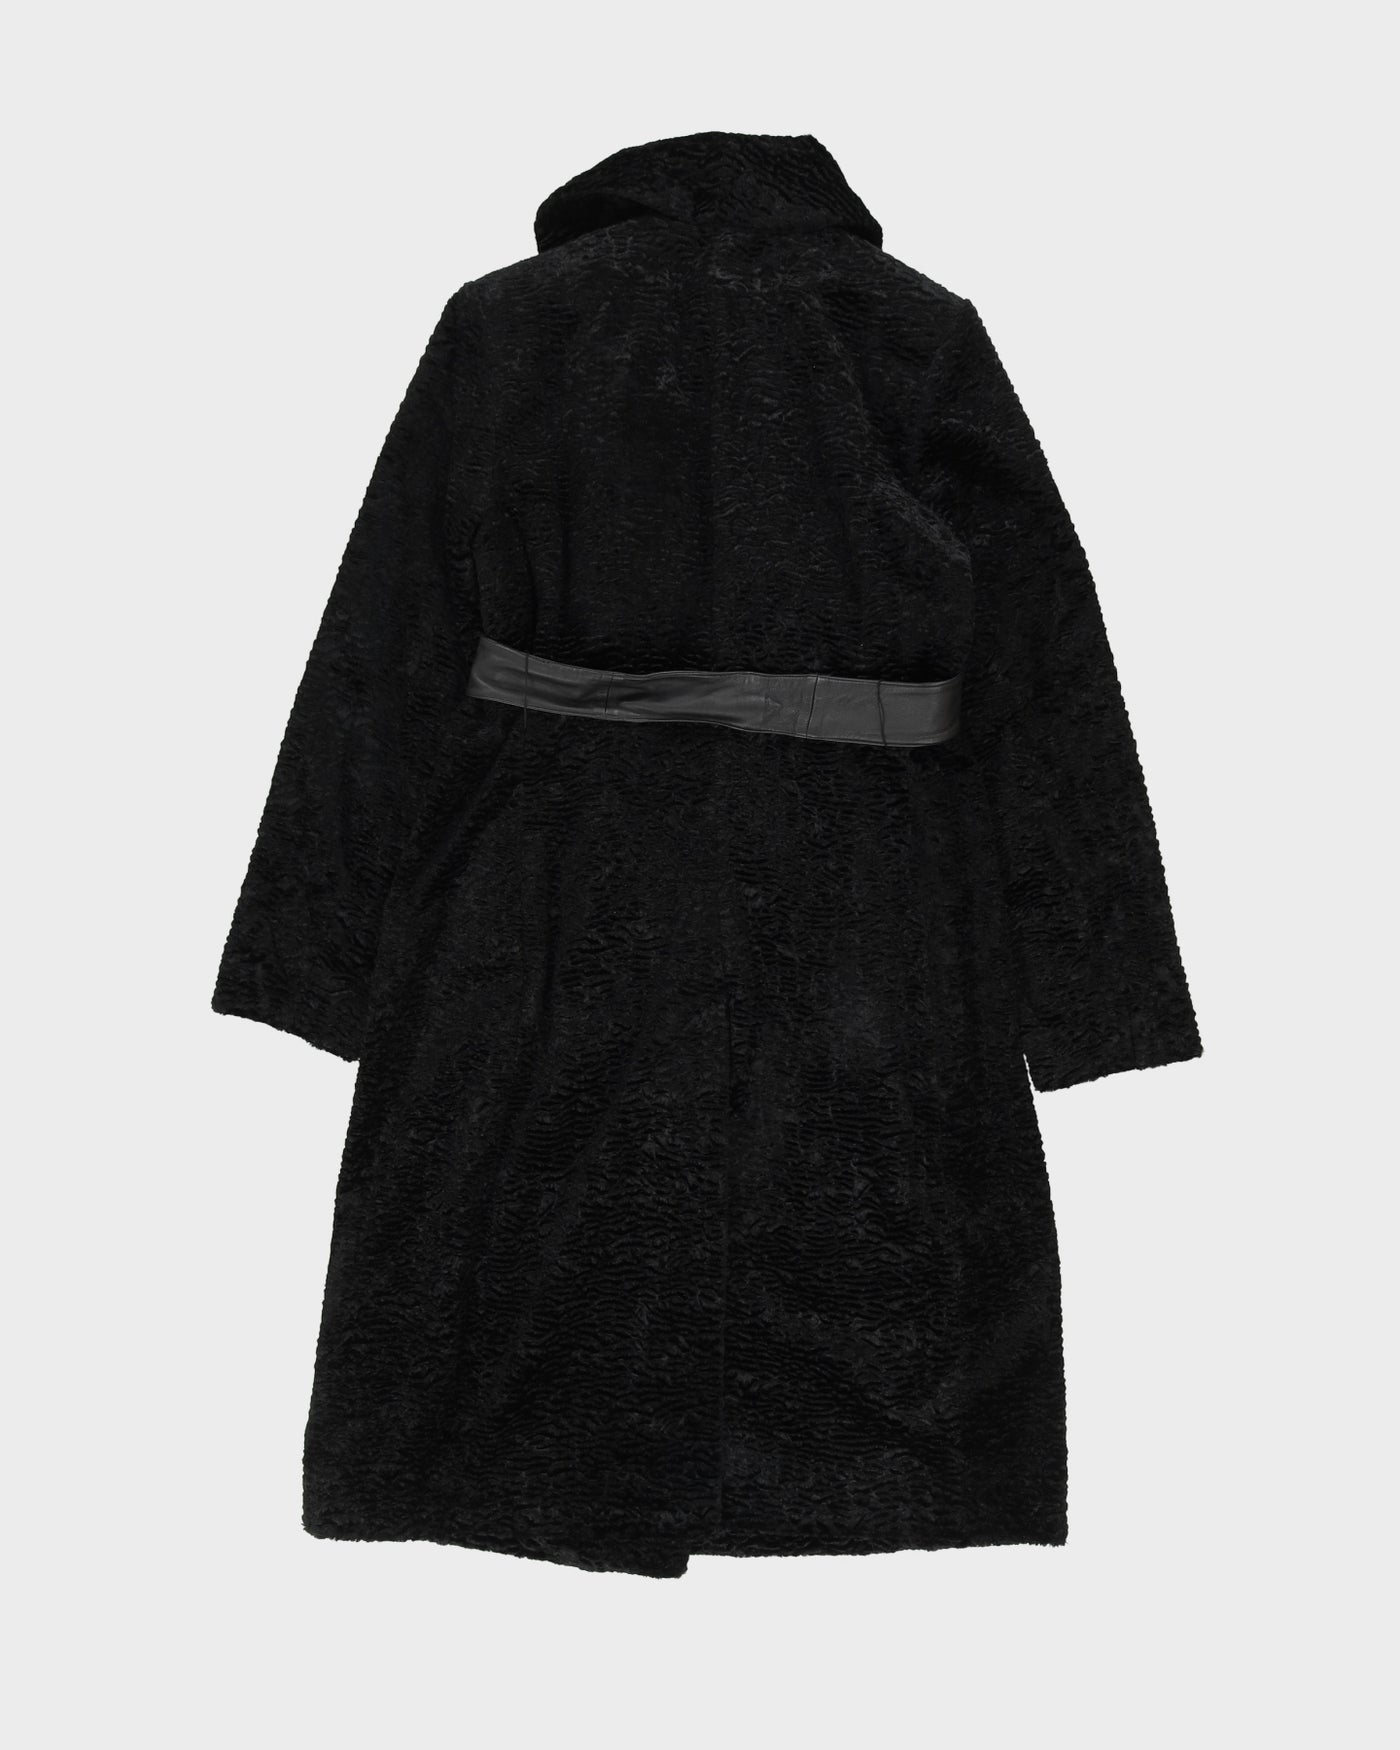 Calvin Klein Black Faux Fur Coat - S